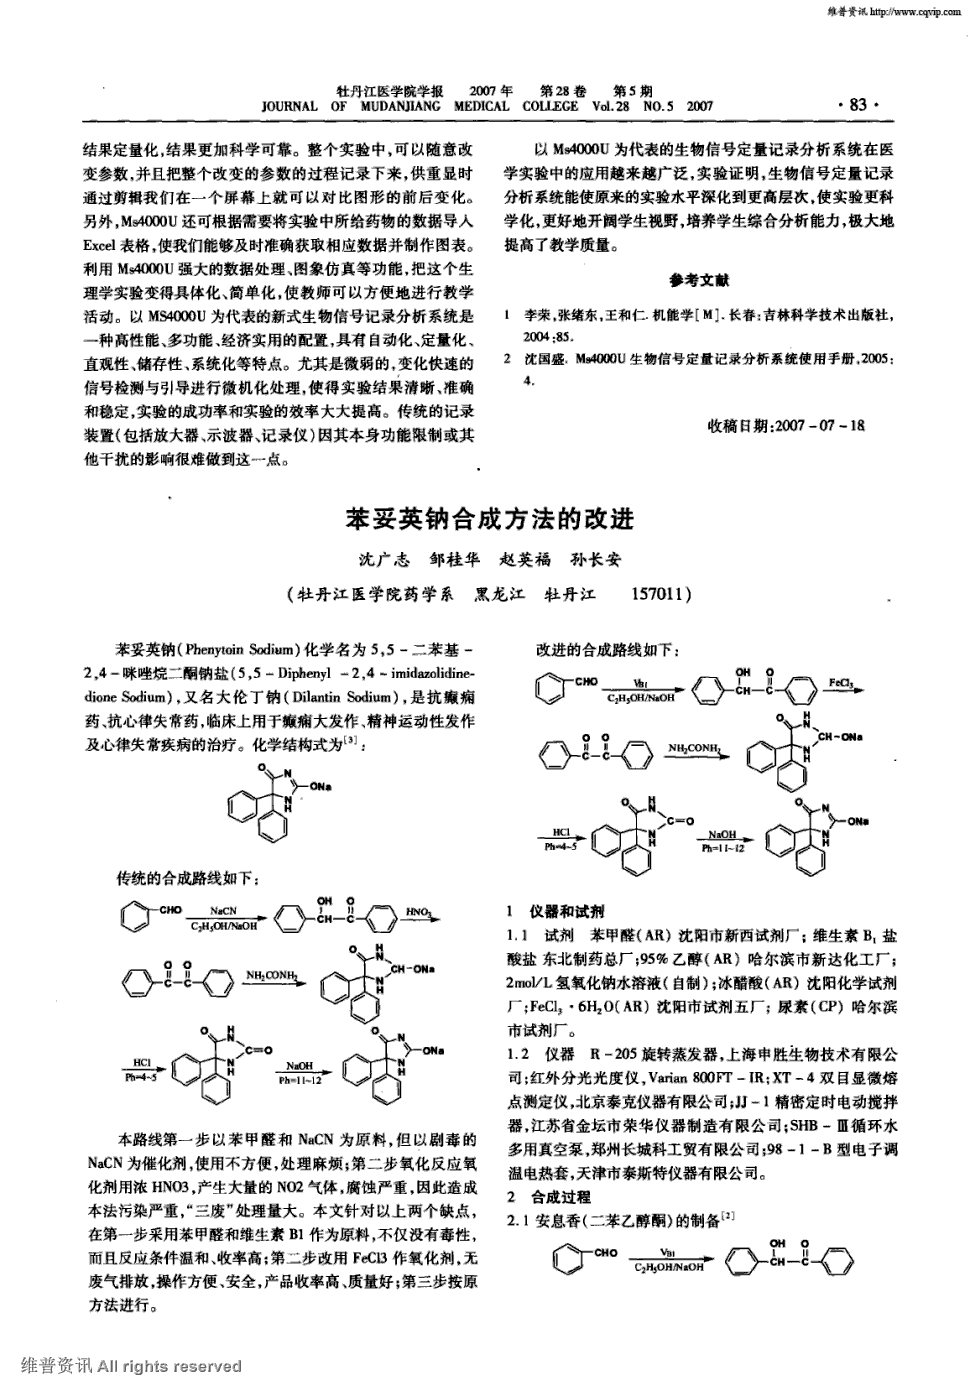 期刊苯妥英钠合成方法的改进被引量:4      苯妥英钠(phenytoin